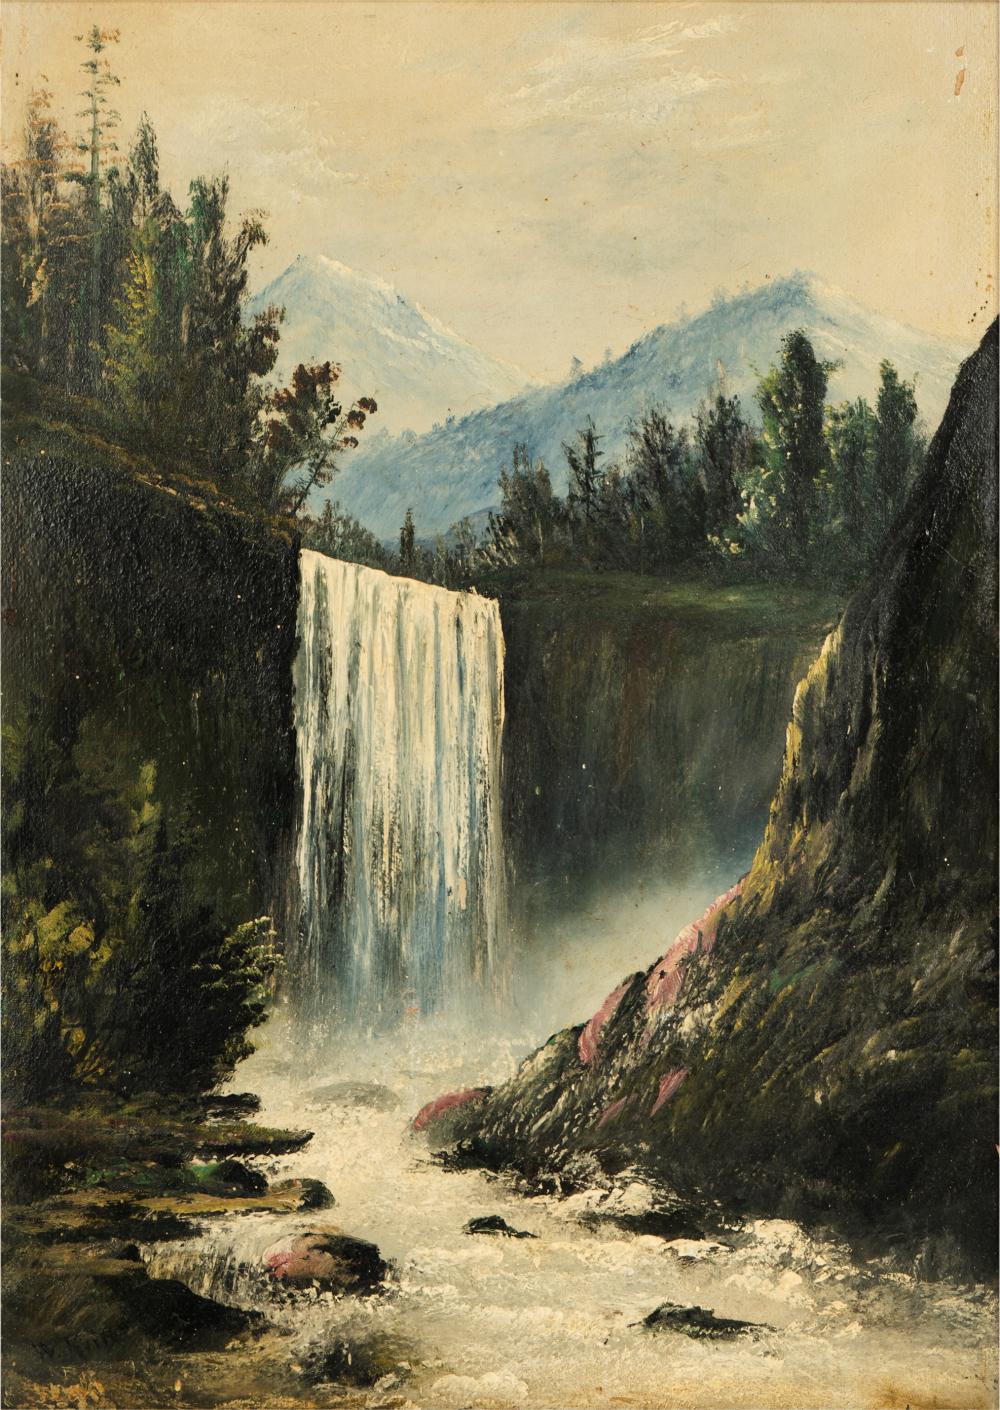 WILLIAM KEITH (1838-1911): NEVADA